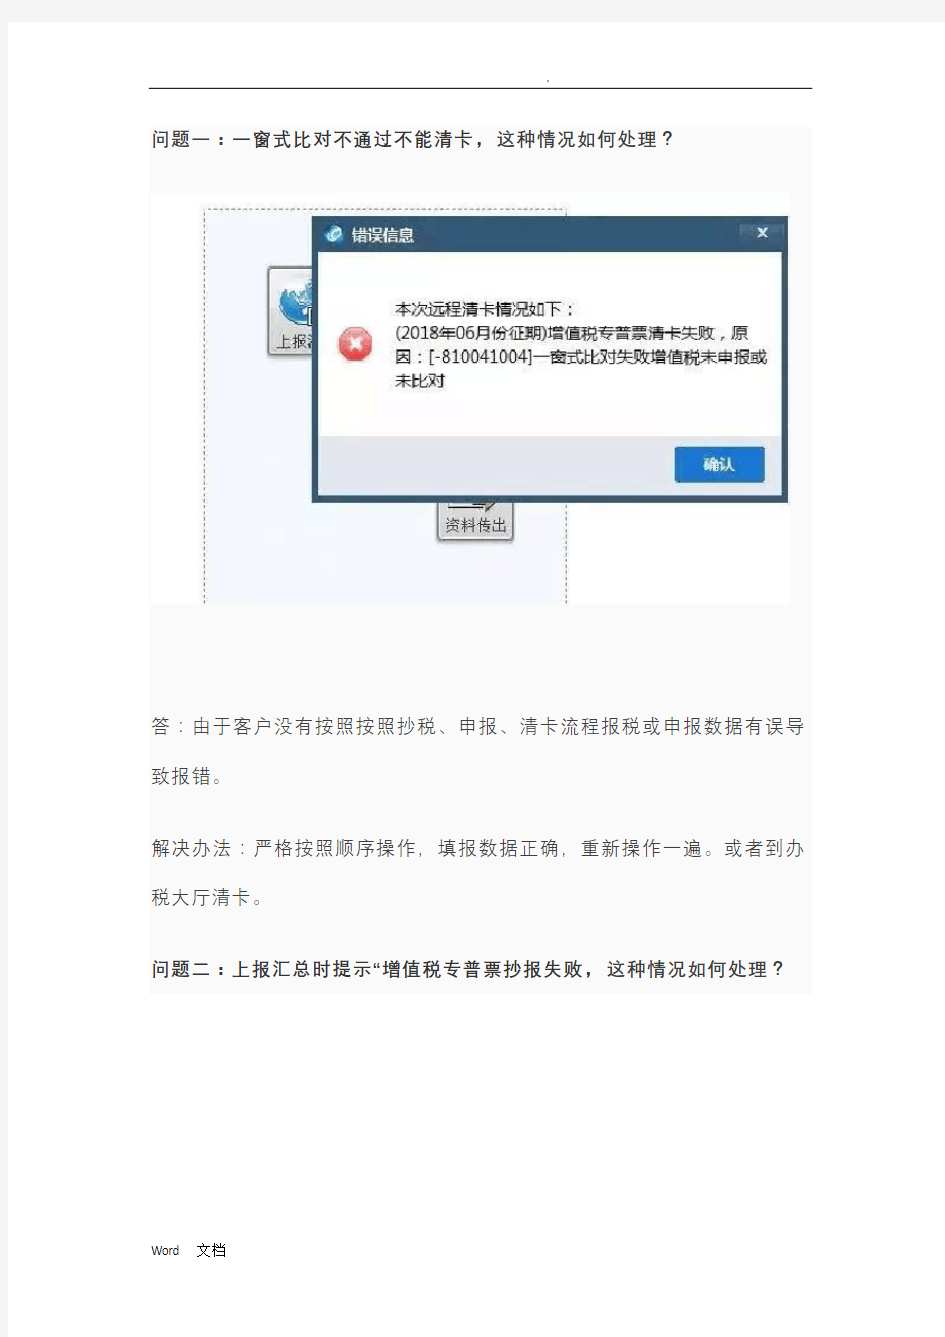 广东航天信息(金税盘)开票系统常见问题